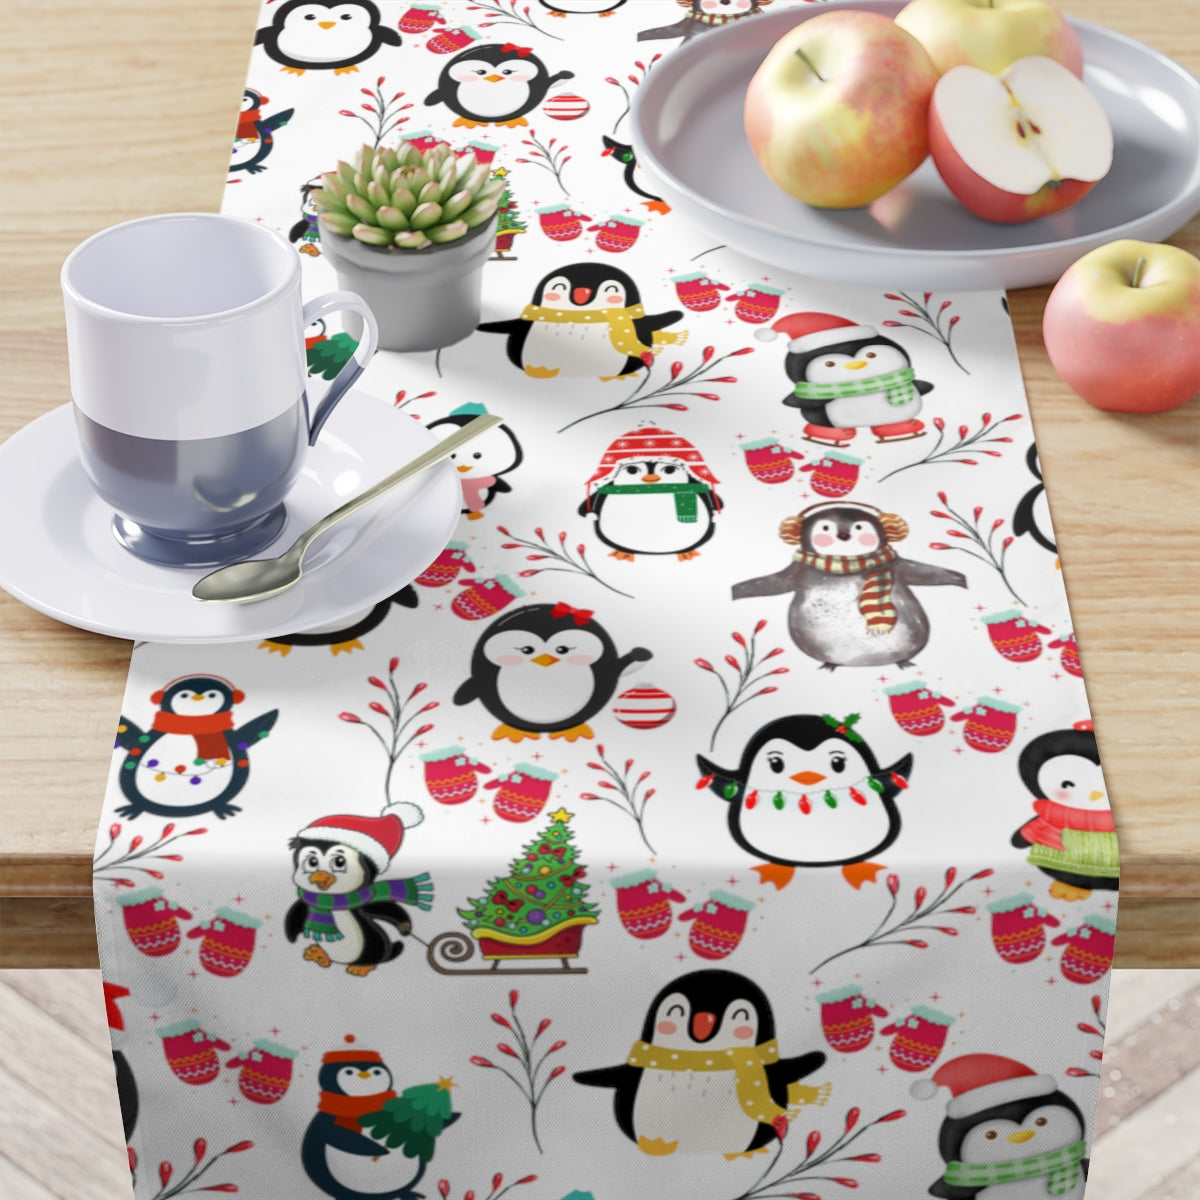 Penguin Table Runner / Christmas Table Runner / Christmas Decor / Penguin Decor